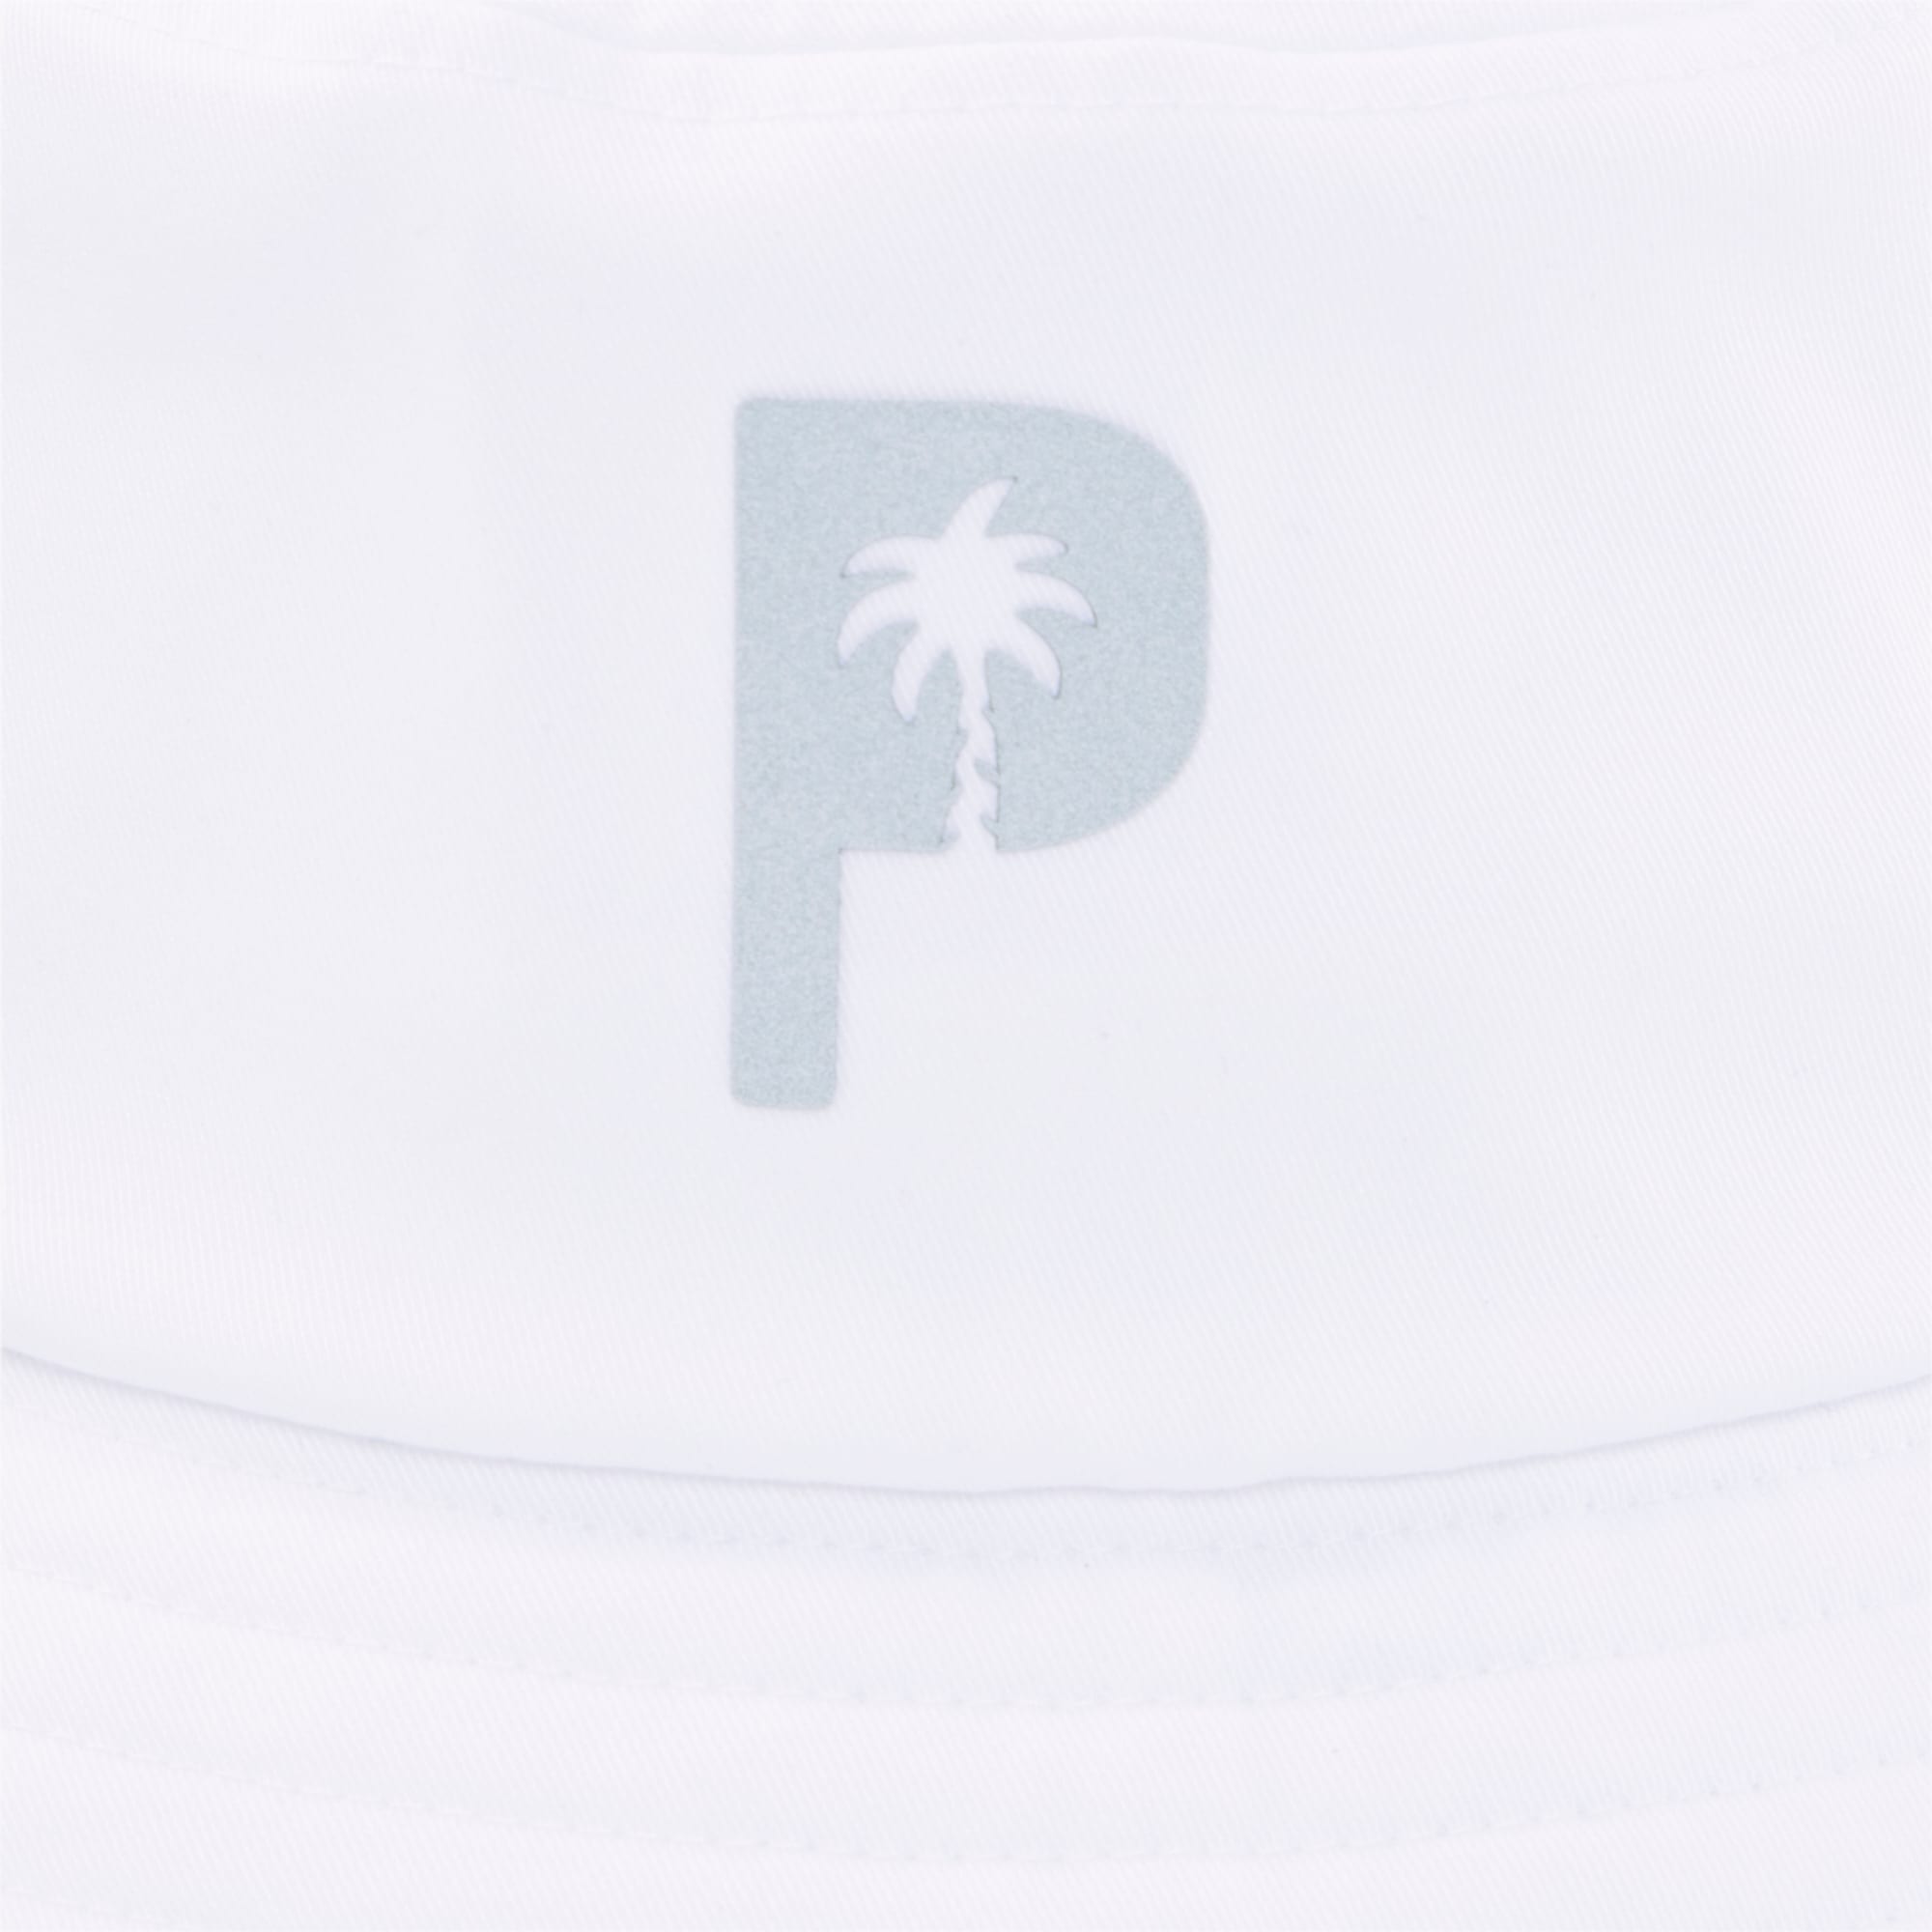 PUMA X Palm Tree Crew Golf Bucket Hat Für Herren, Weiß, Größe: L/XL, Accessoires